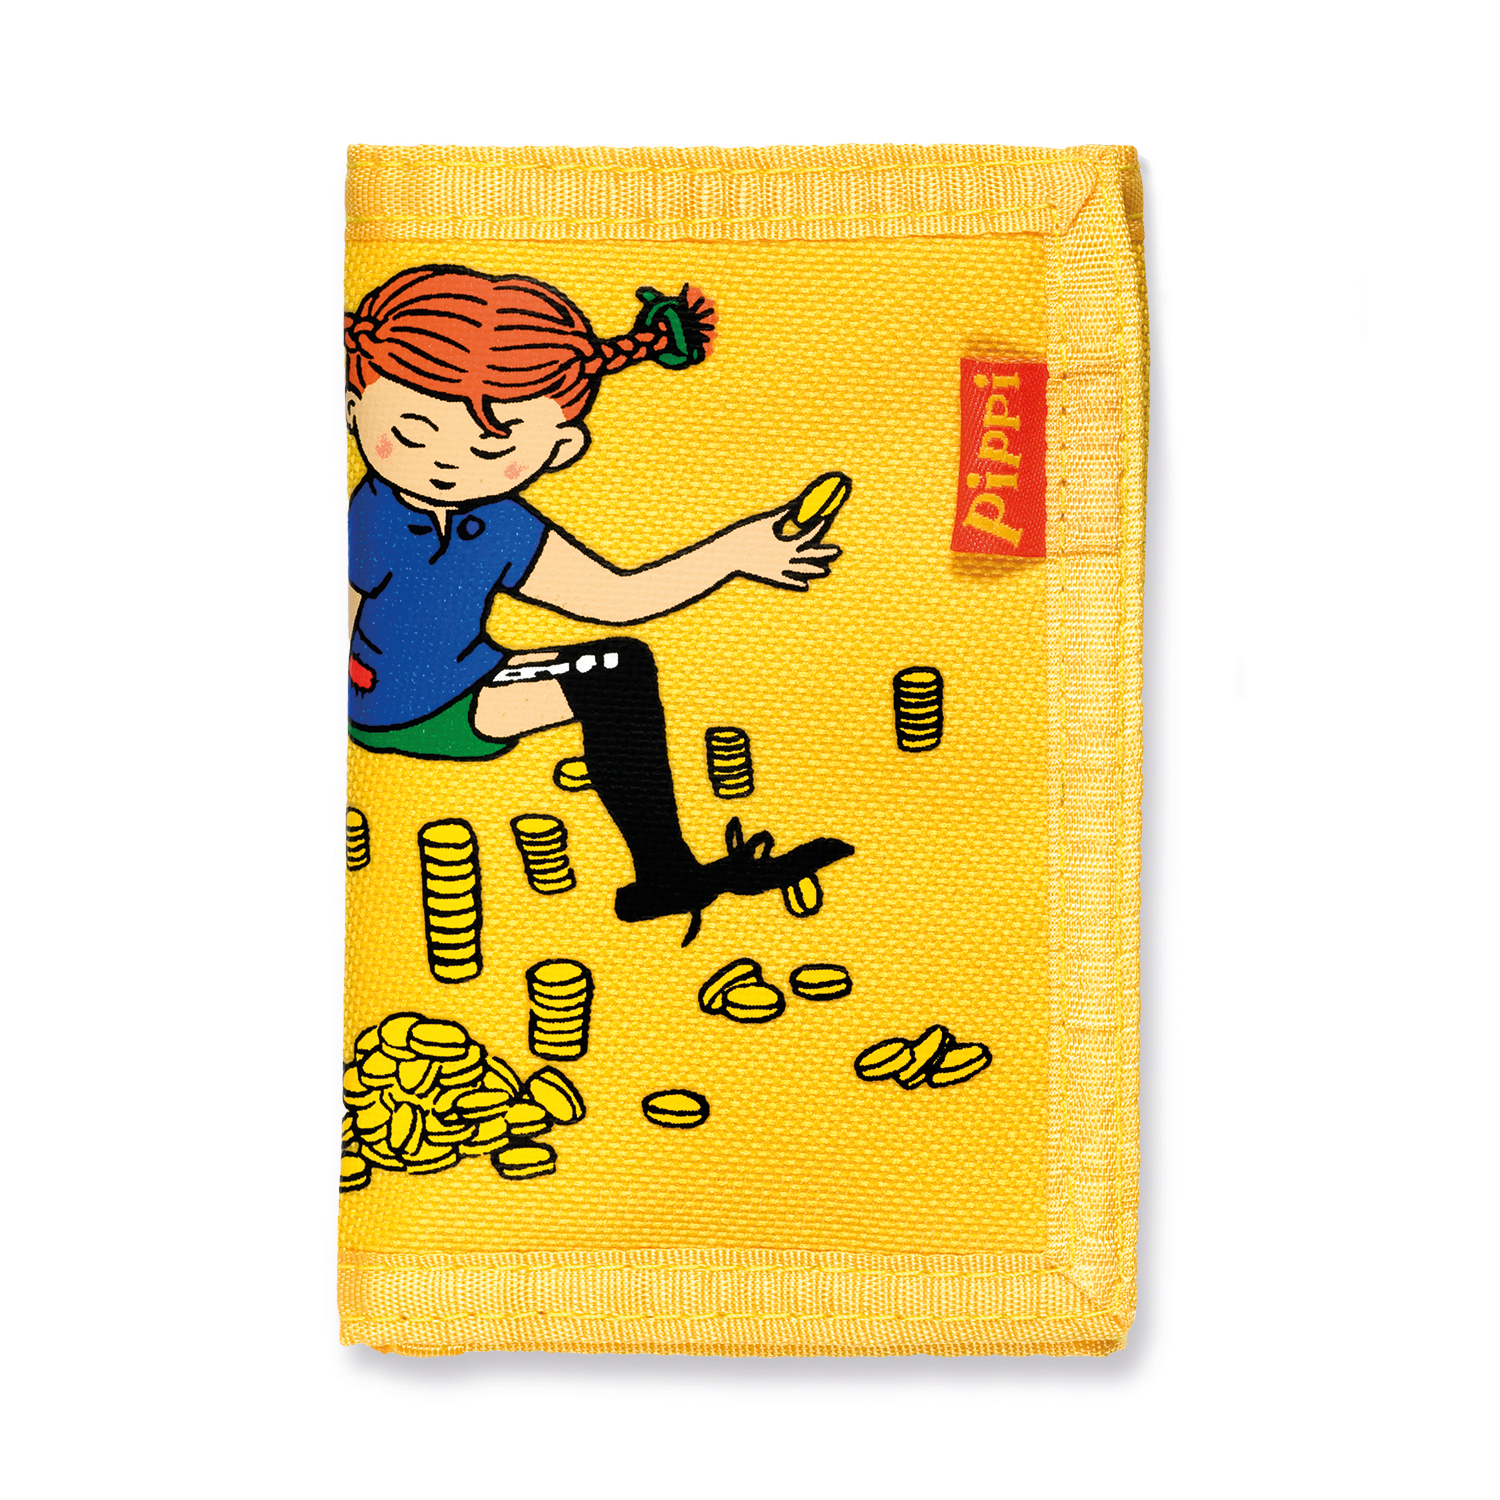 Børnetasker & Accessories pippi børnetaske tegnebog gul